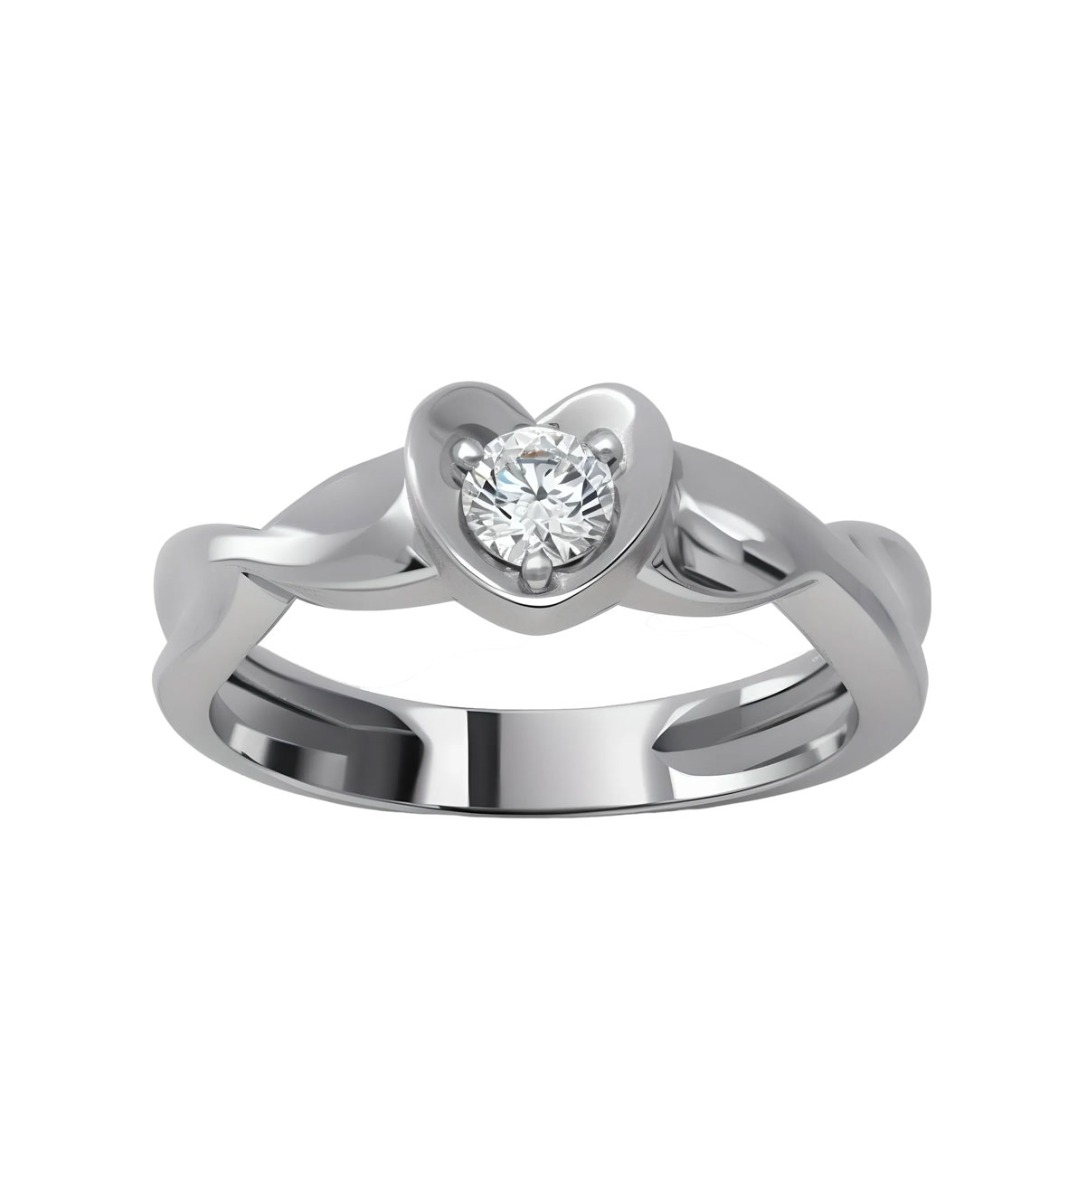 anillo compromiso oro blanco 18k con diamante fotografia frontal